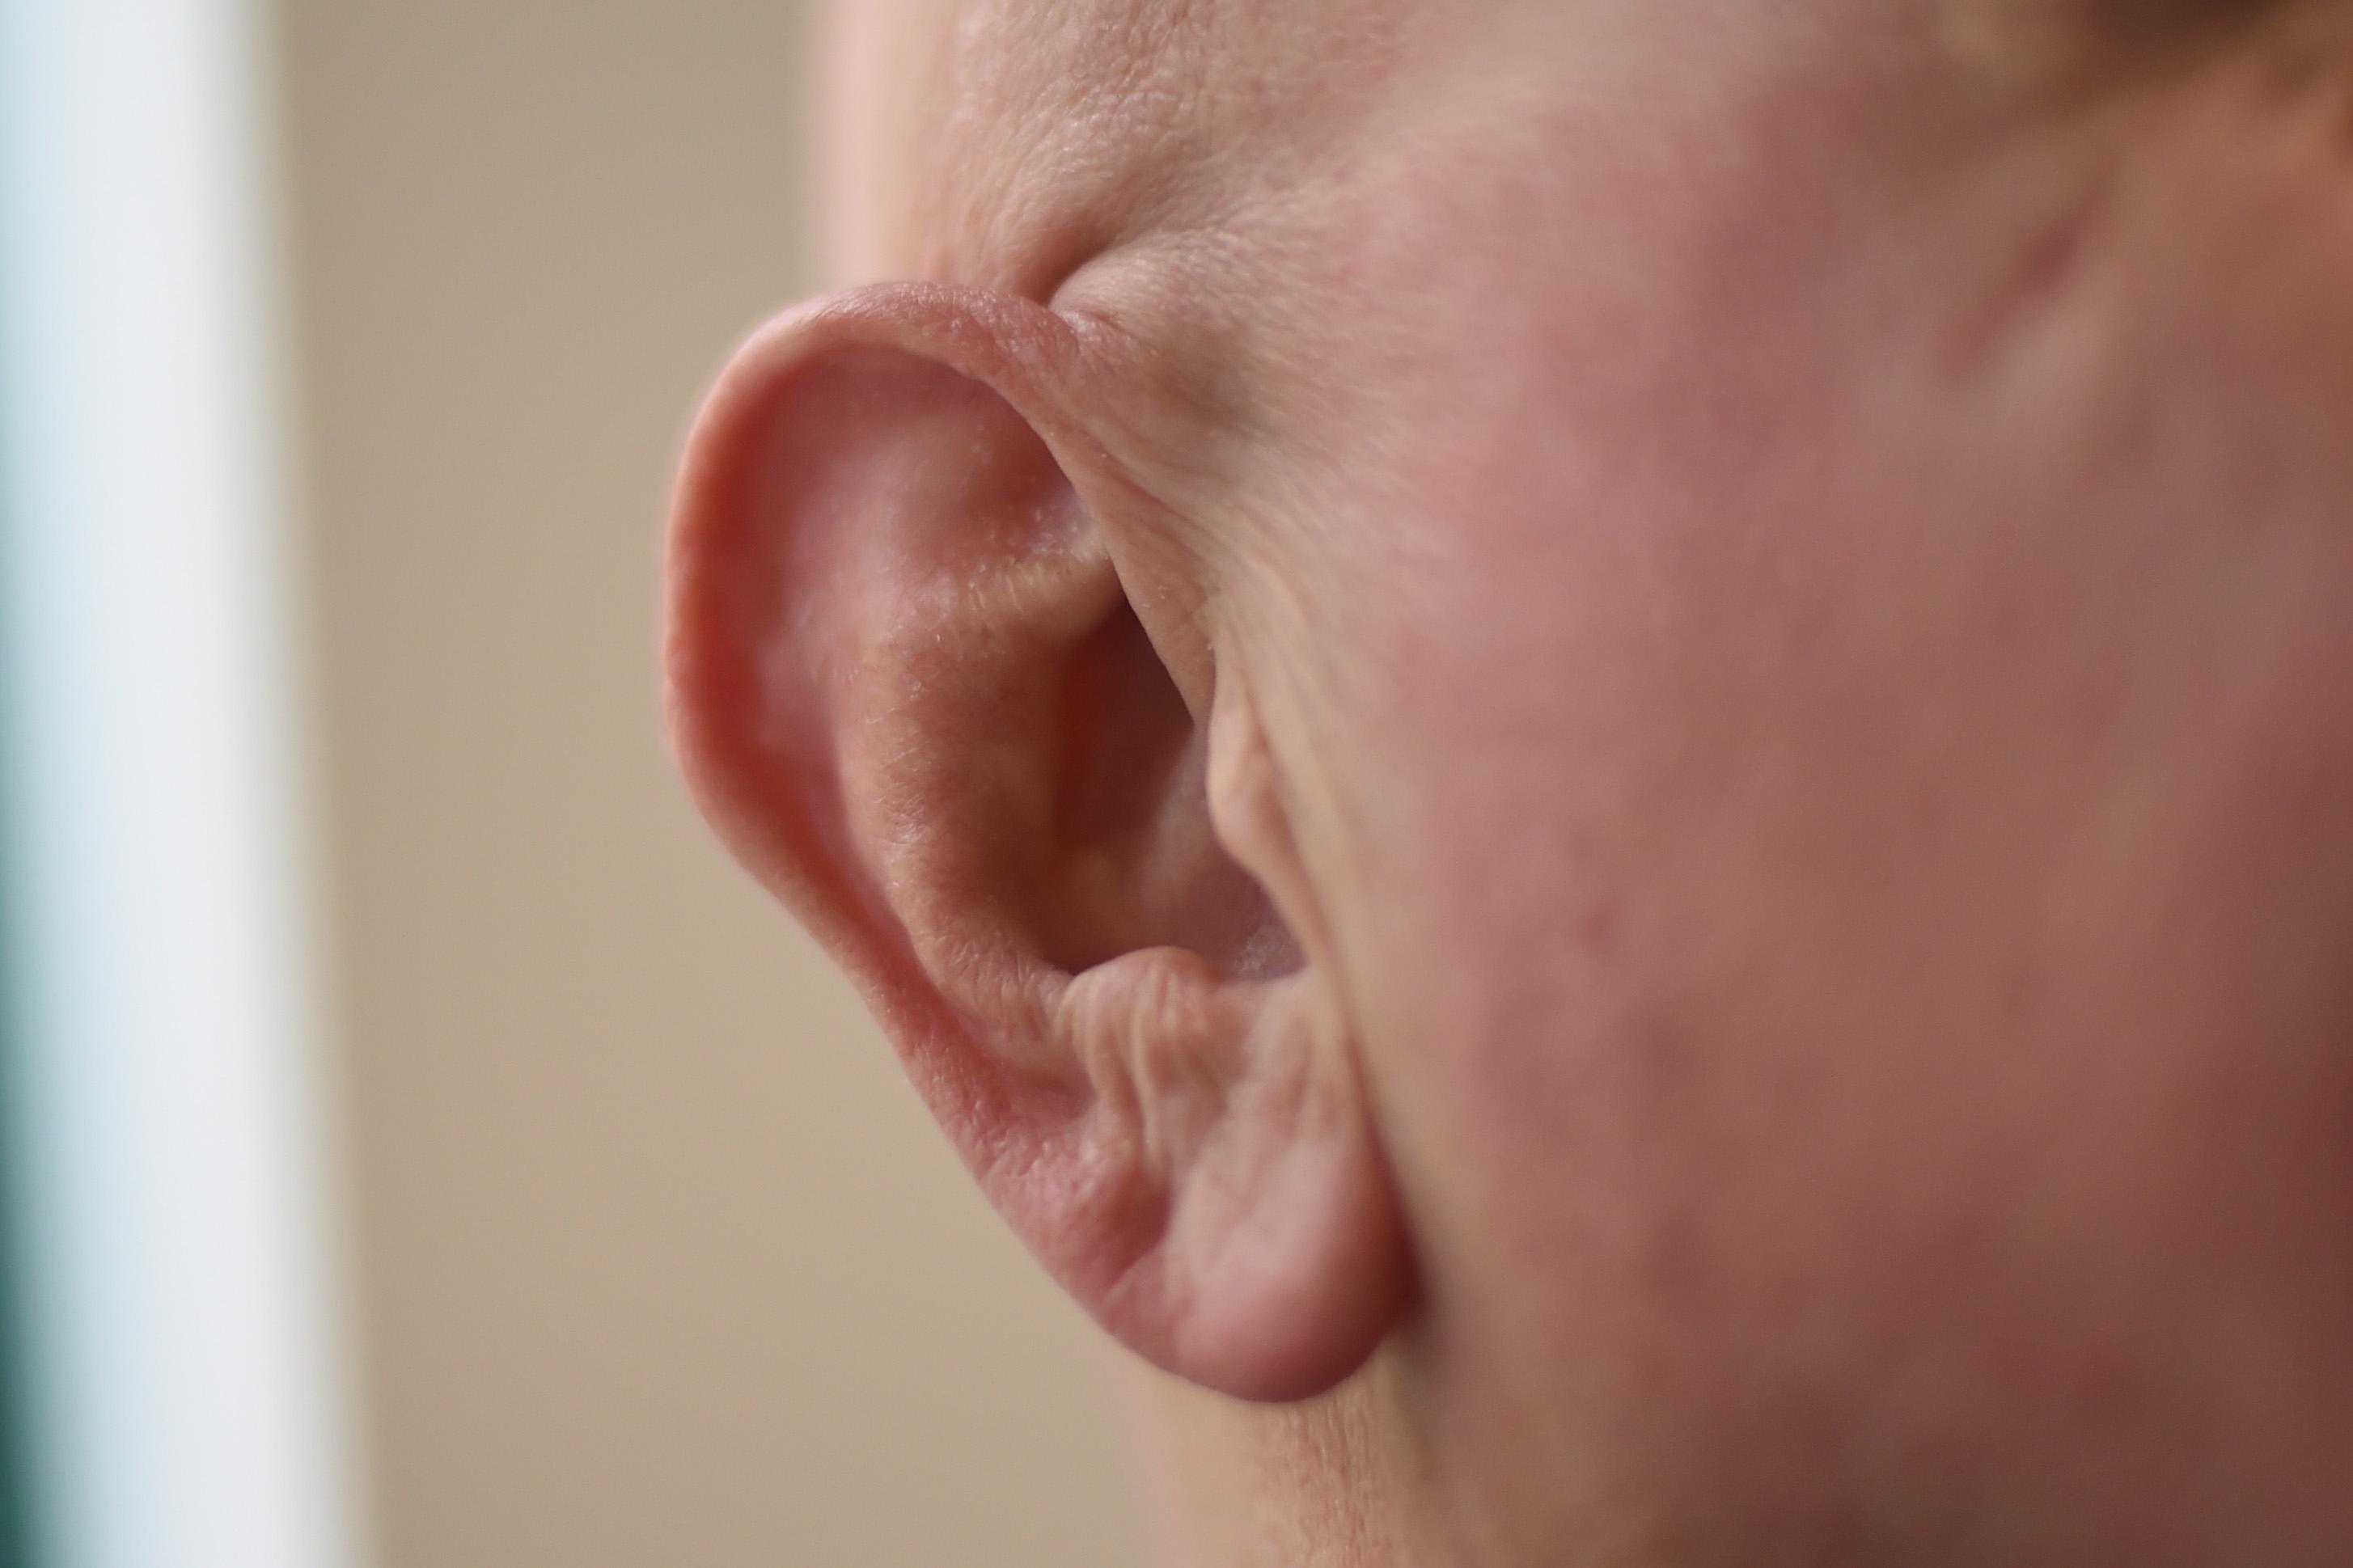 Mann litt an Ohrenschmerzen: Arzt entfernte Zecke aus Gehörgang